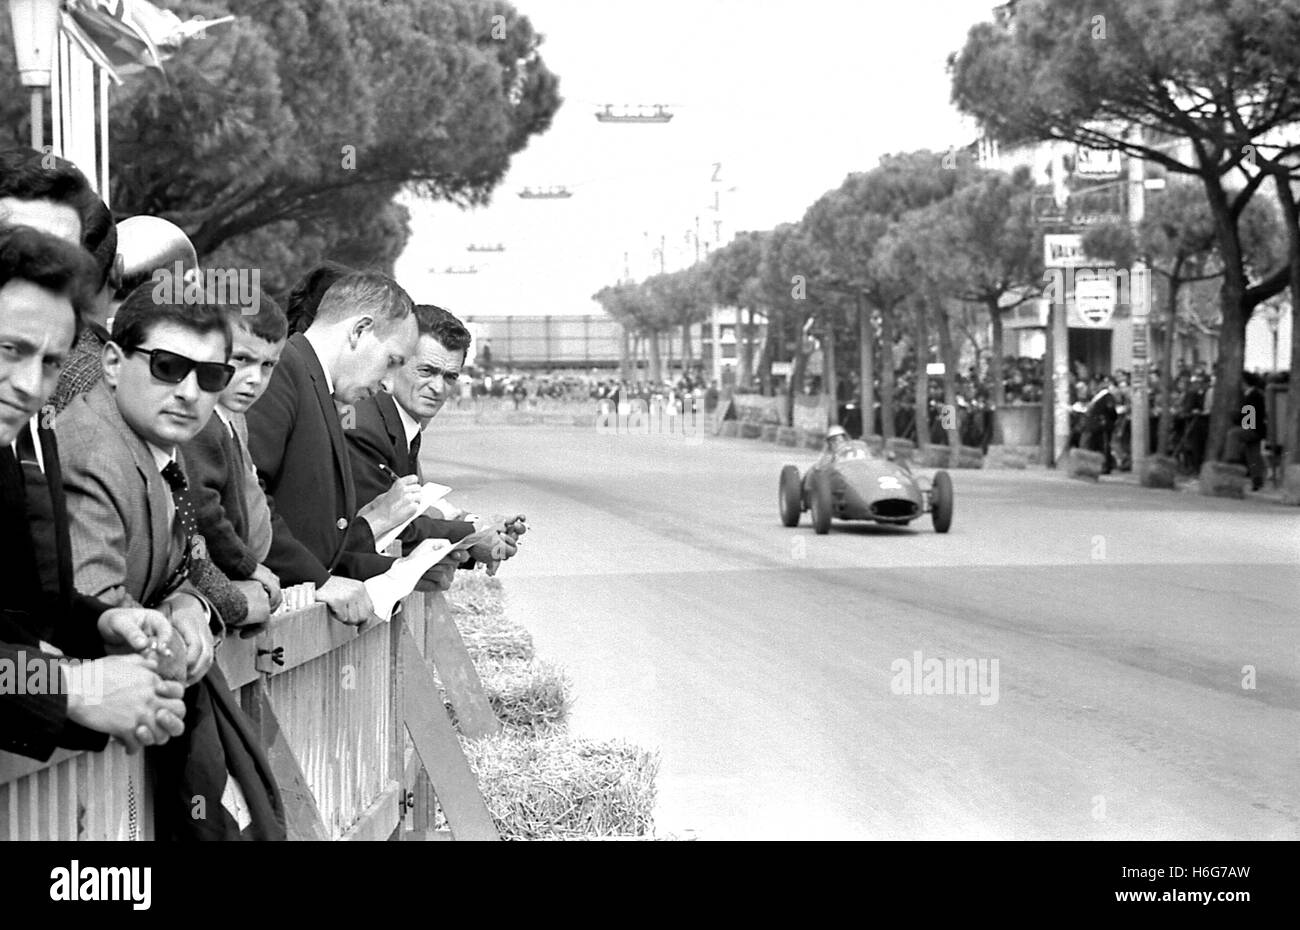 FJ CESENATICO 1963 Stock Photo